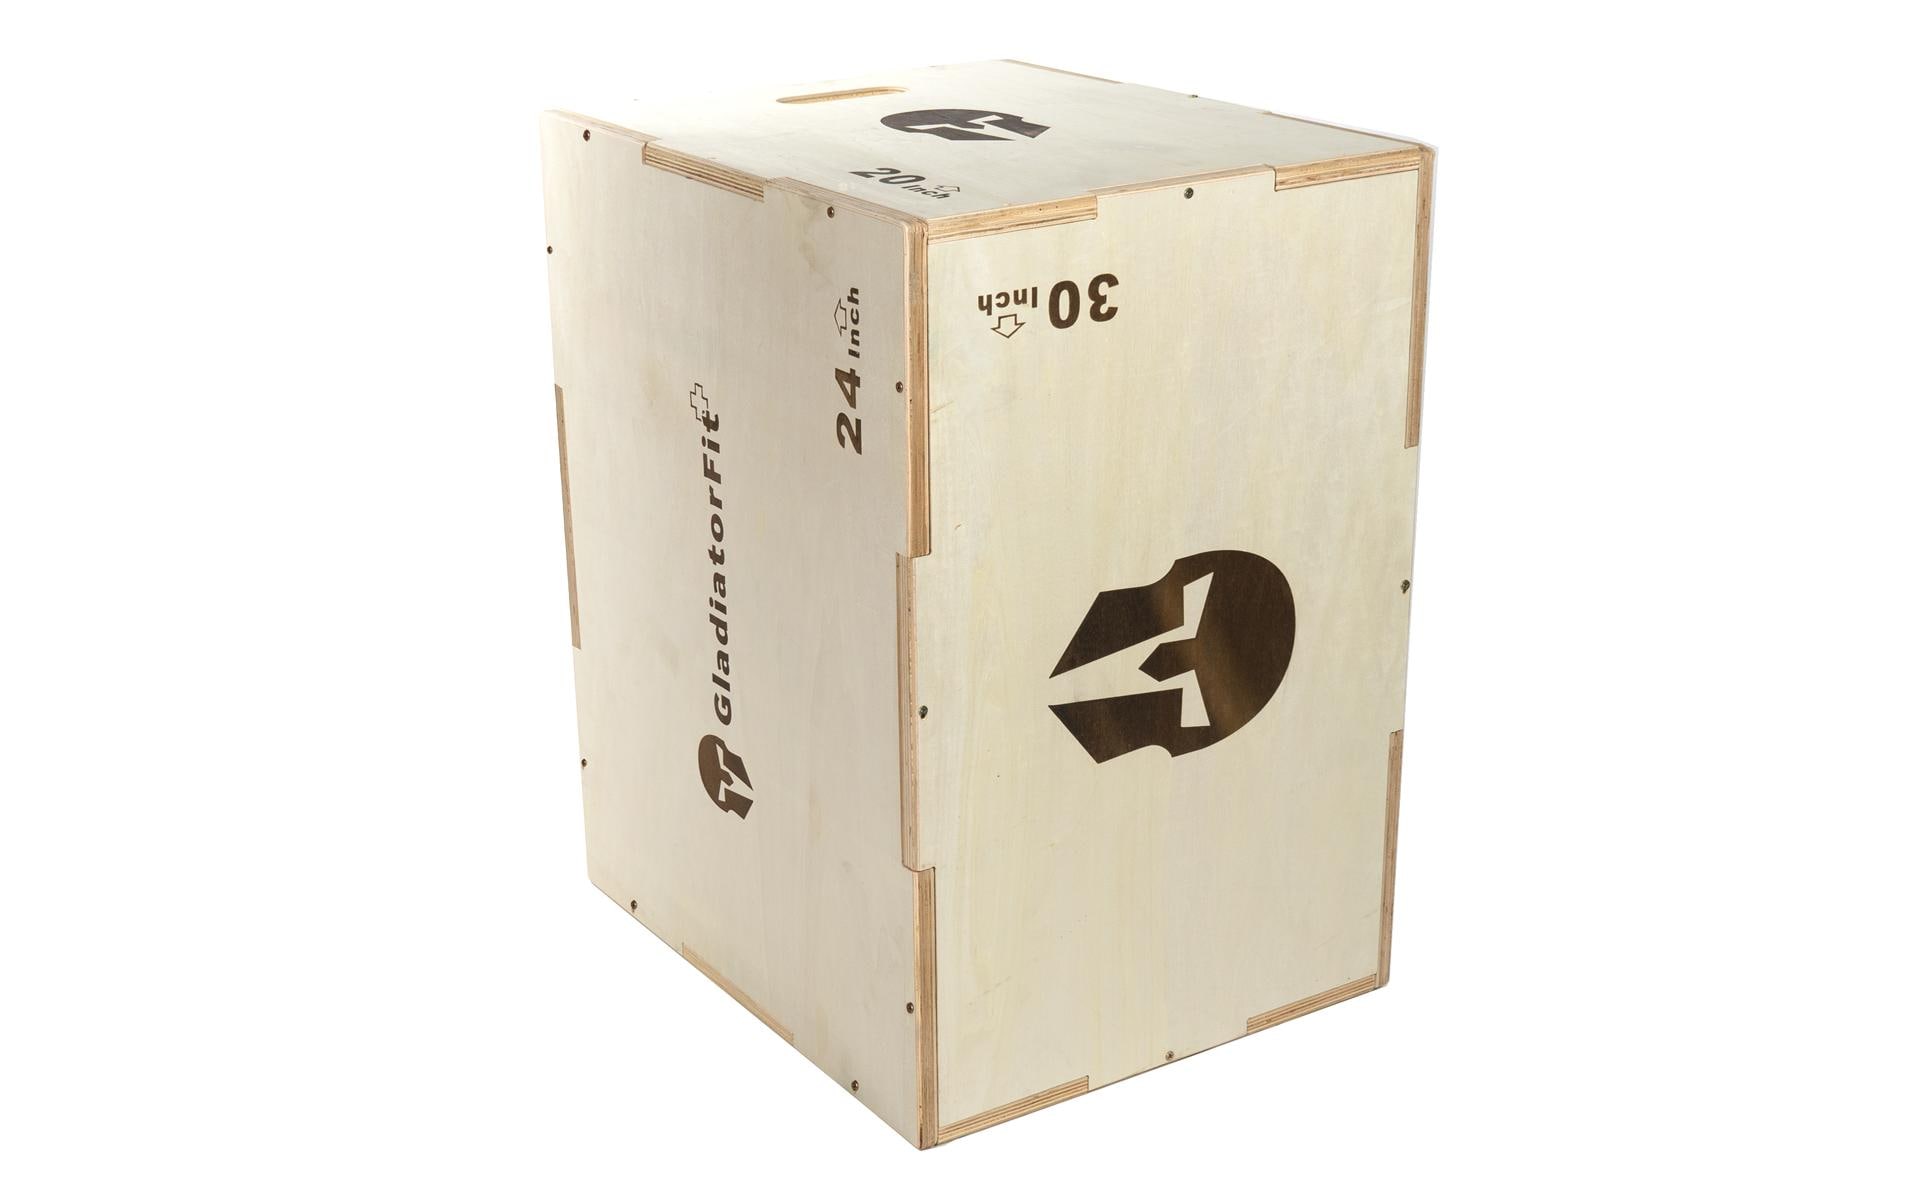 Gladiatorfit Sprung-Plyobox aus Holz 3 in 1